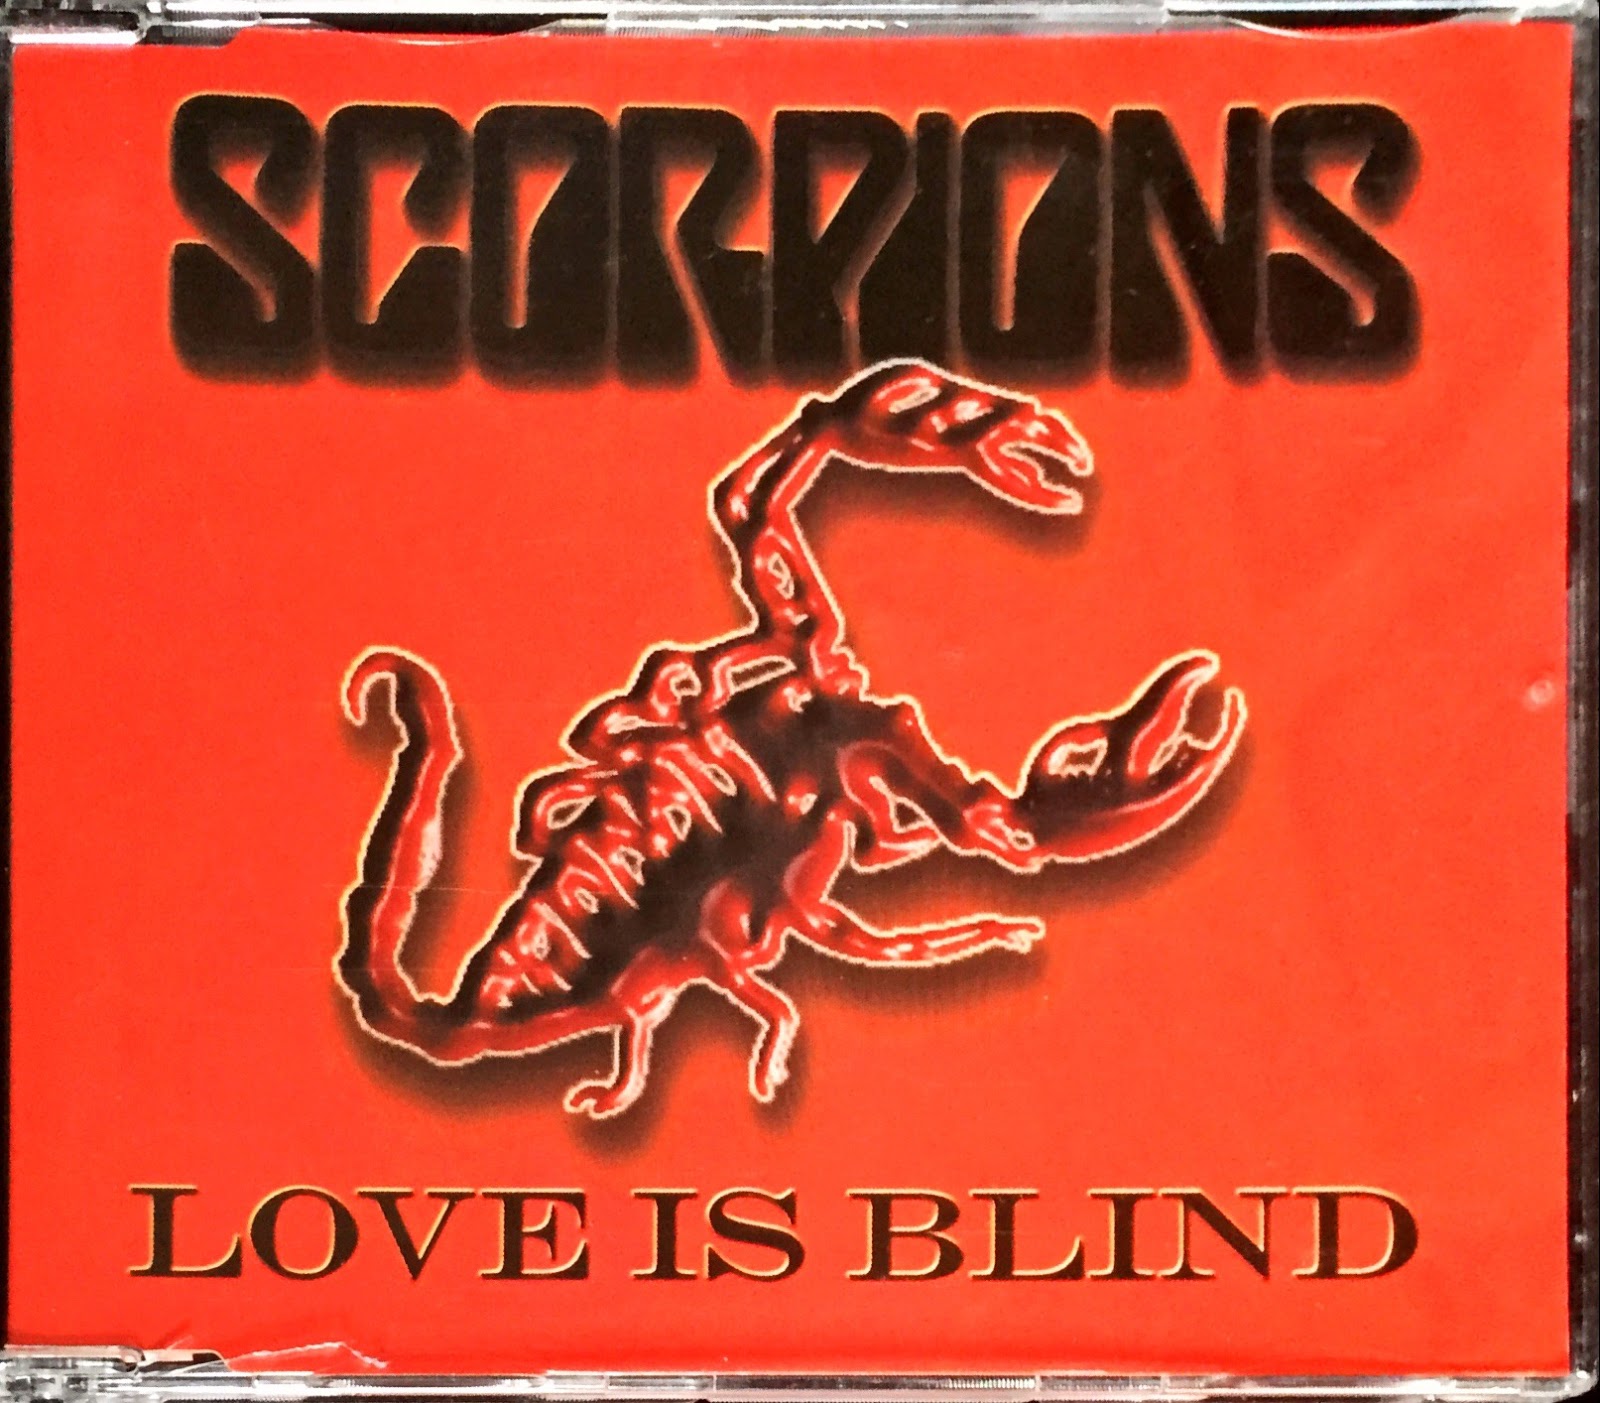 Scorpions flac. Scorpions синглы. Scorpions обложки альбомов. Группа Scorpions 1999 фото. Обложки альбомов скорпионс оригинальные.